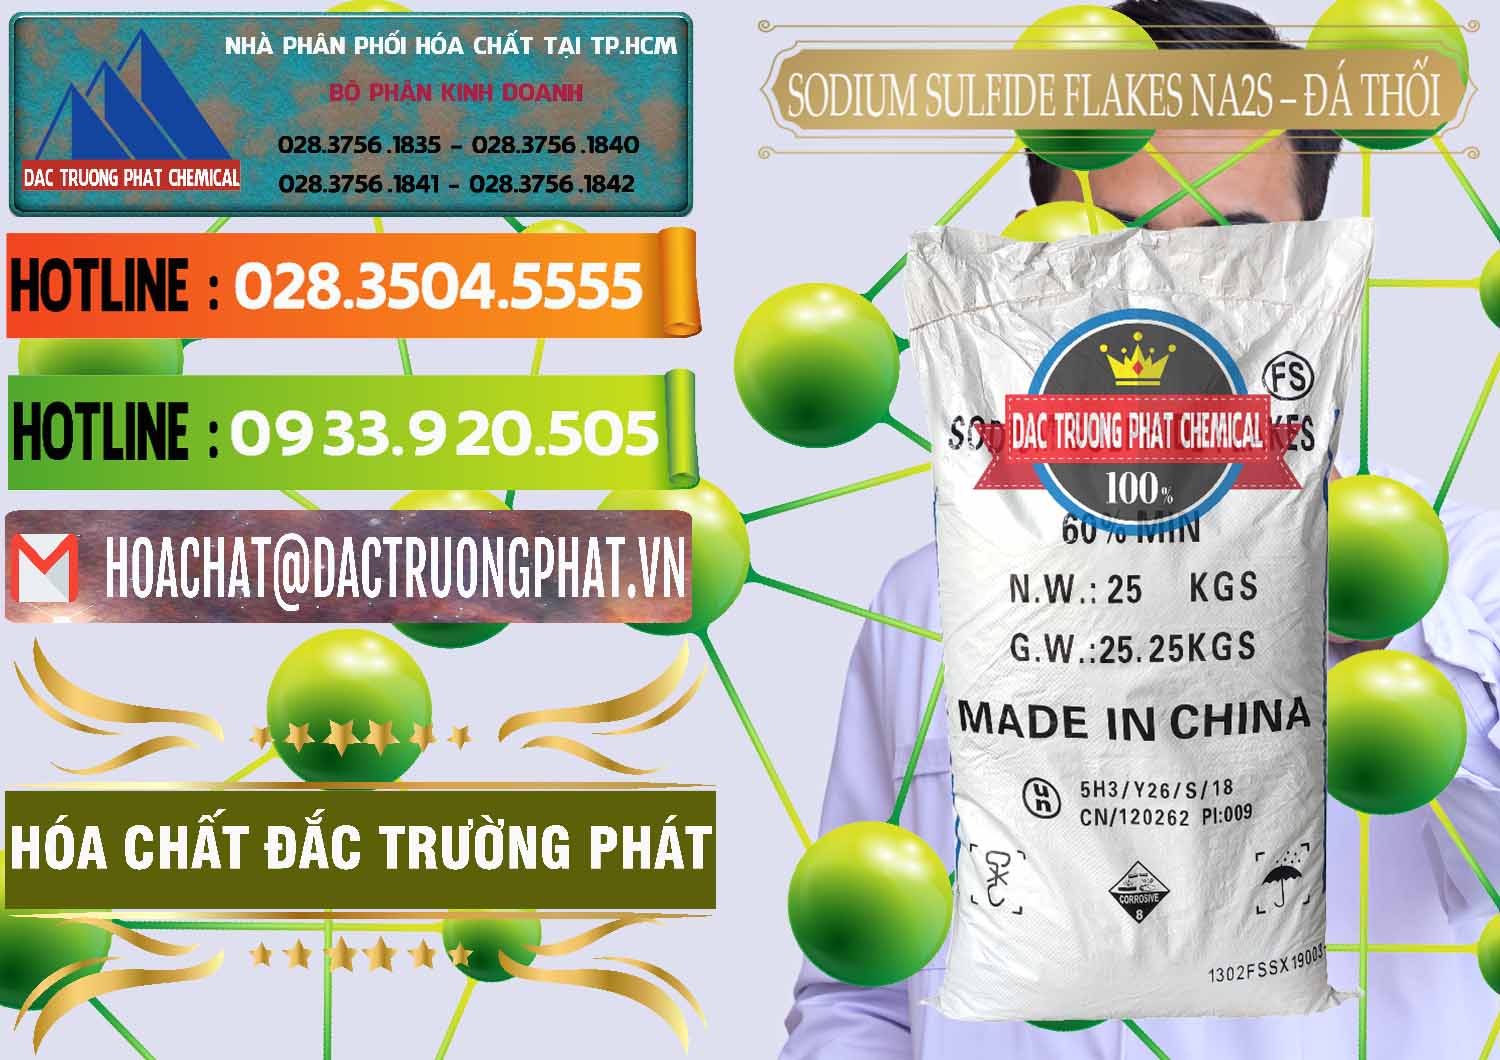 Nhà nhập khẩu & bán Sodium Sulfide Flakes NA2S – Đá Thối Đỏ Trung Quốc China - 0150 - Cty bán và cung cấp hóa chất tại TP.HCM - cungcaphoachat.com.vn